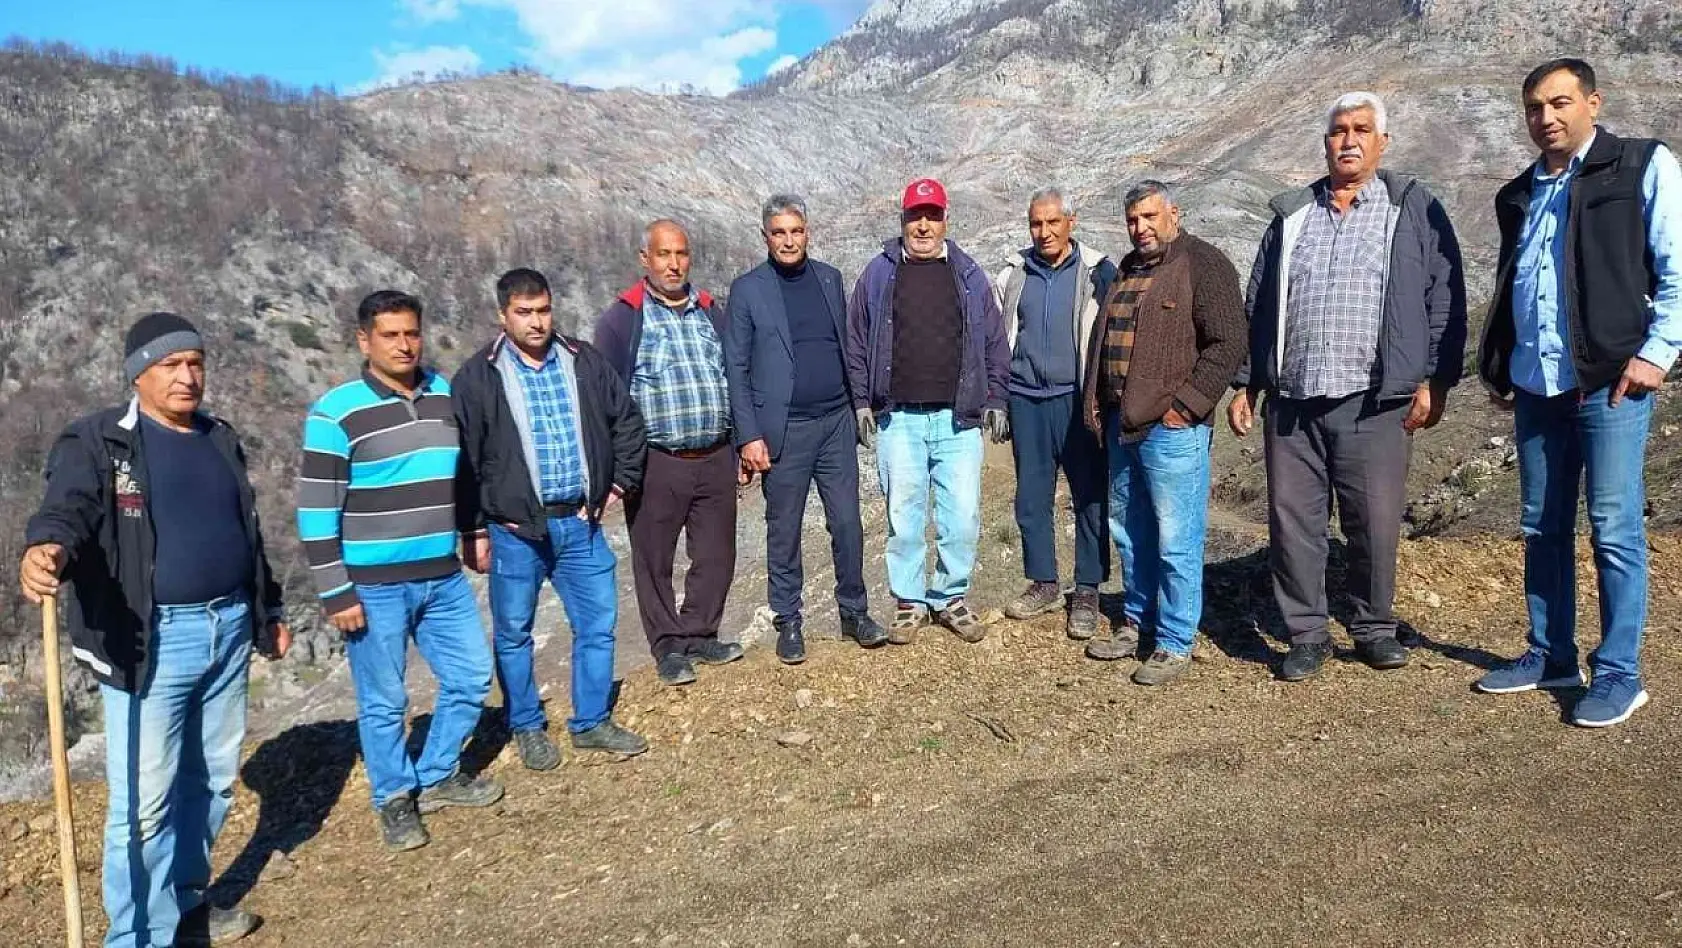 MHP Köyceğiz İlçe Teşkilatı Kızılçam Tohumu ekim faaliyetine katıldı